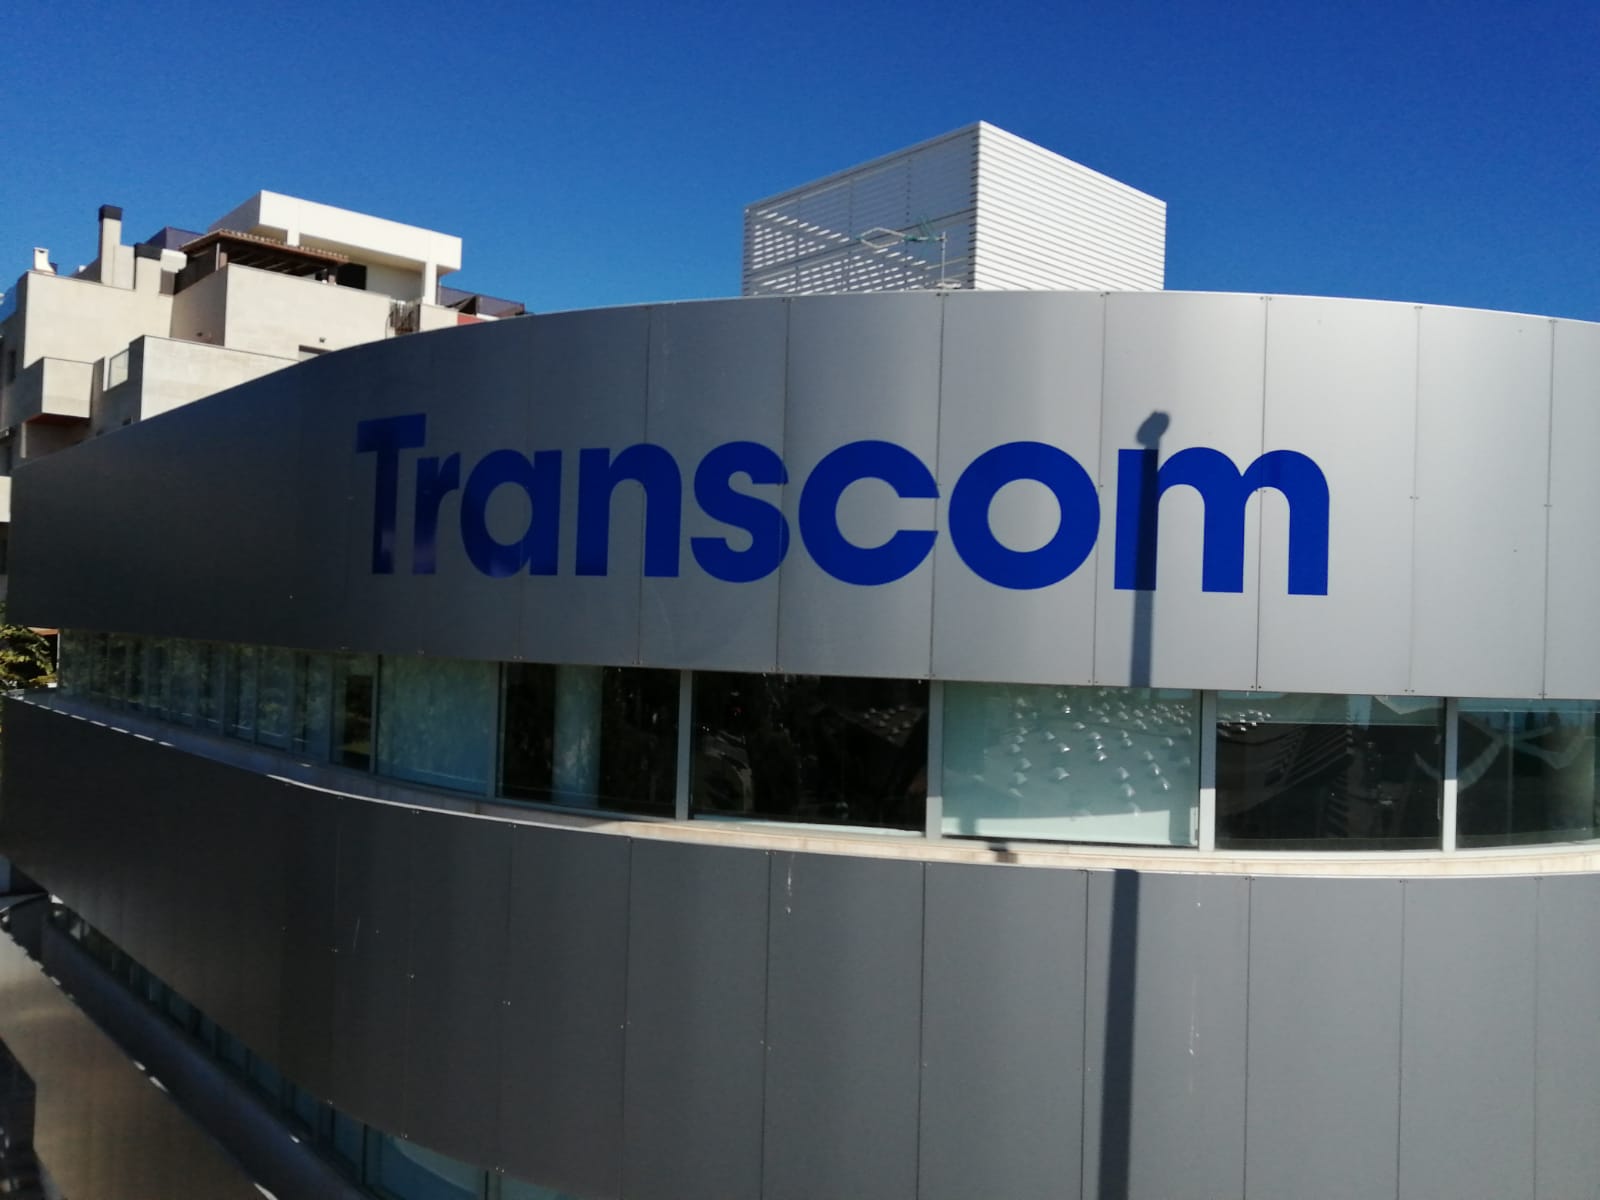 Foto fachada y logo Transcom Torremolinos